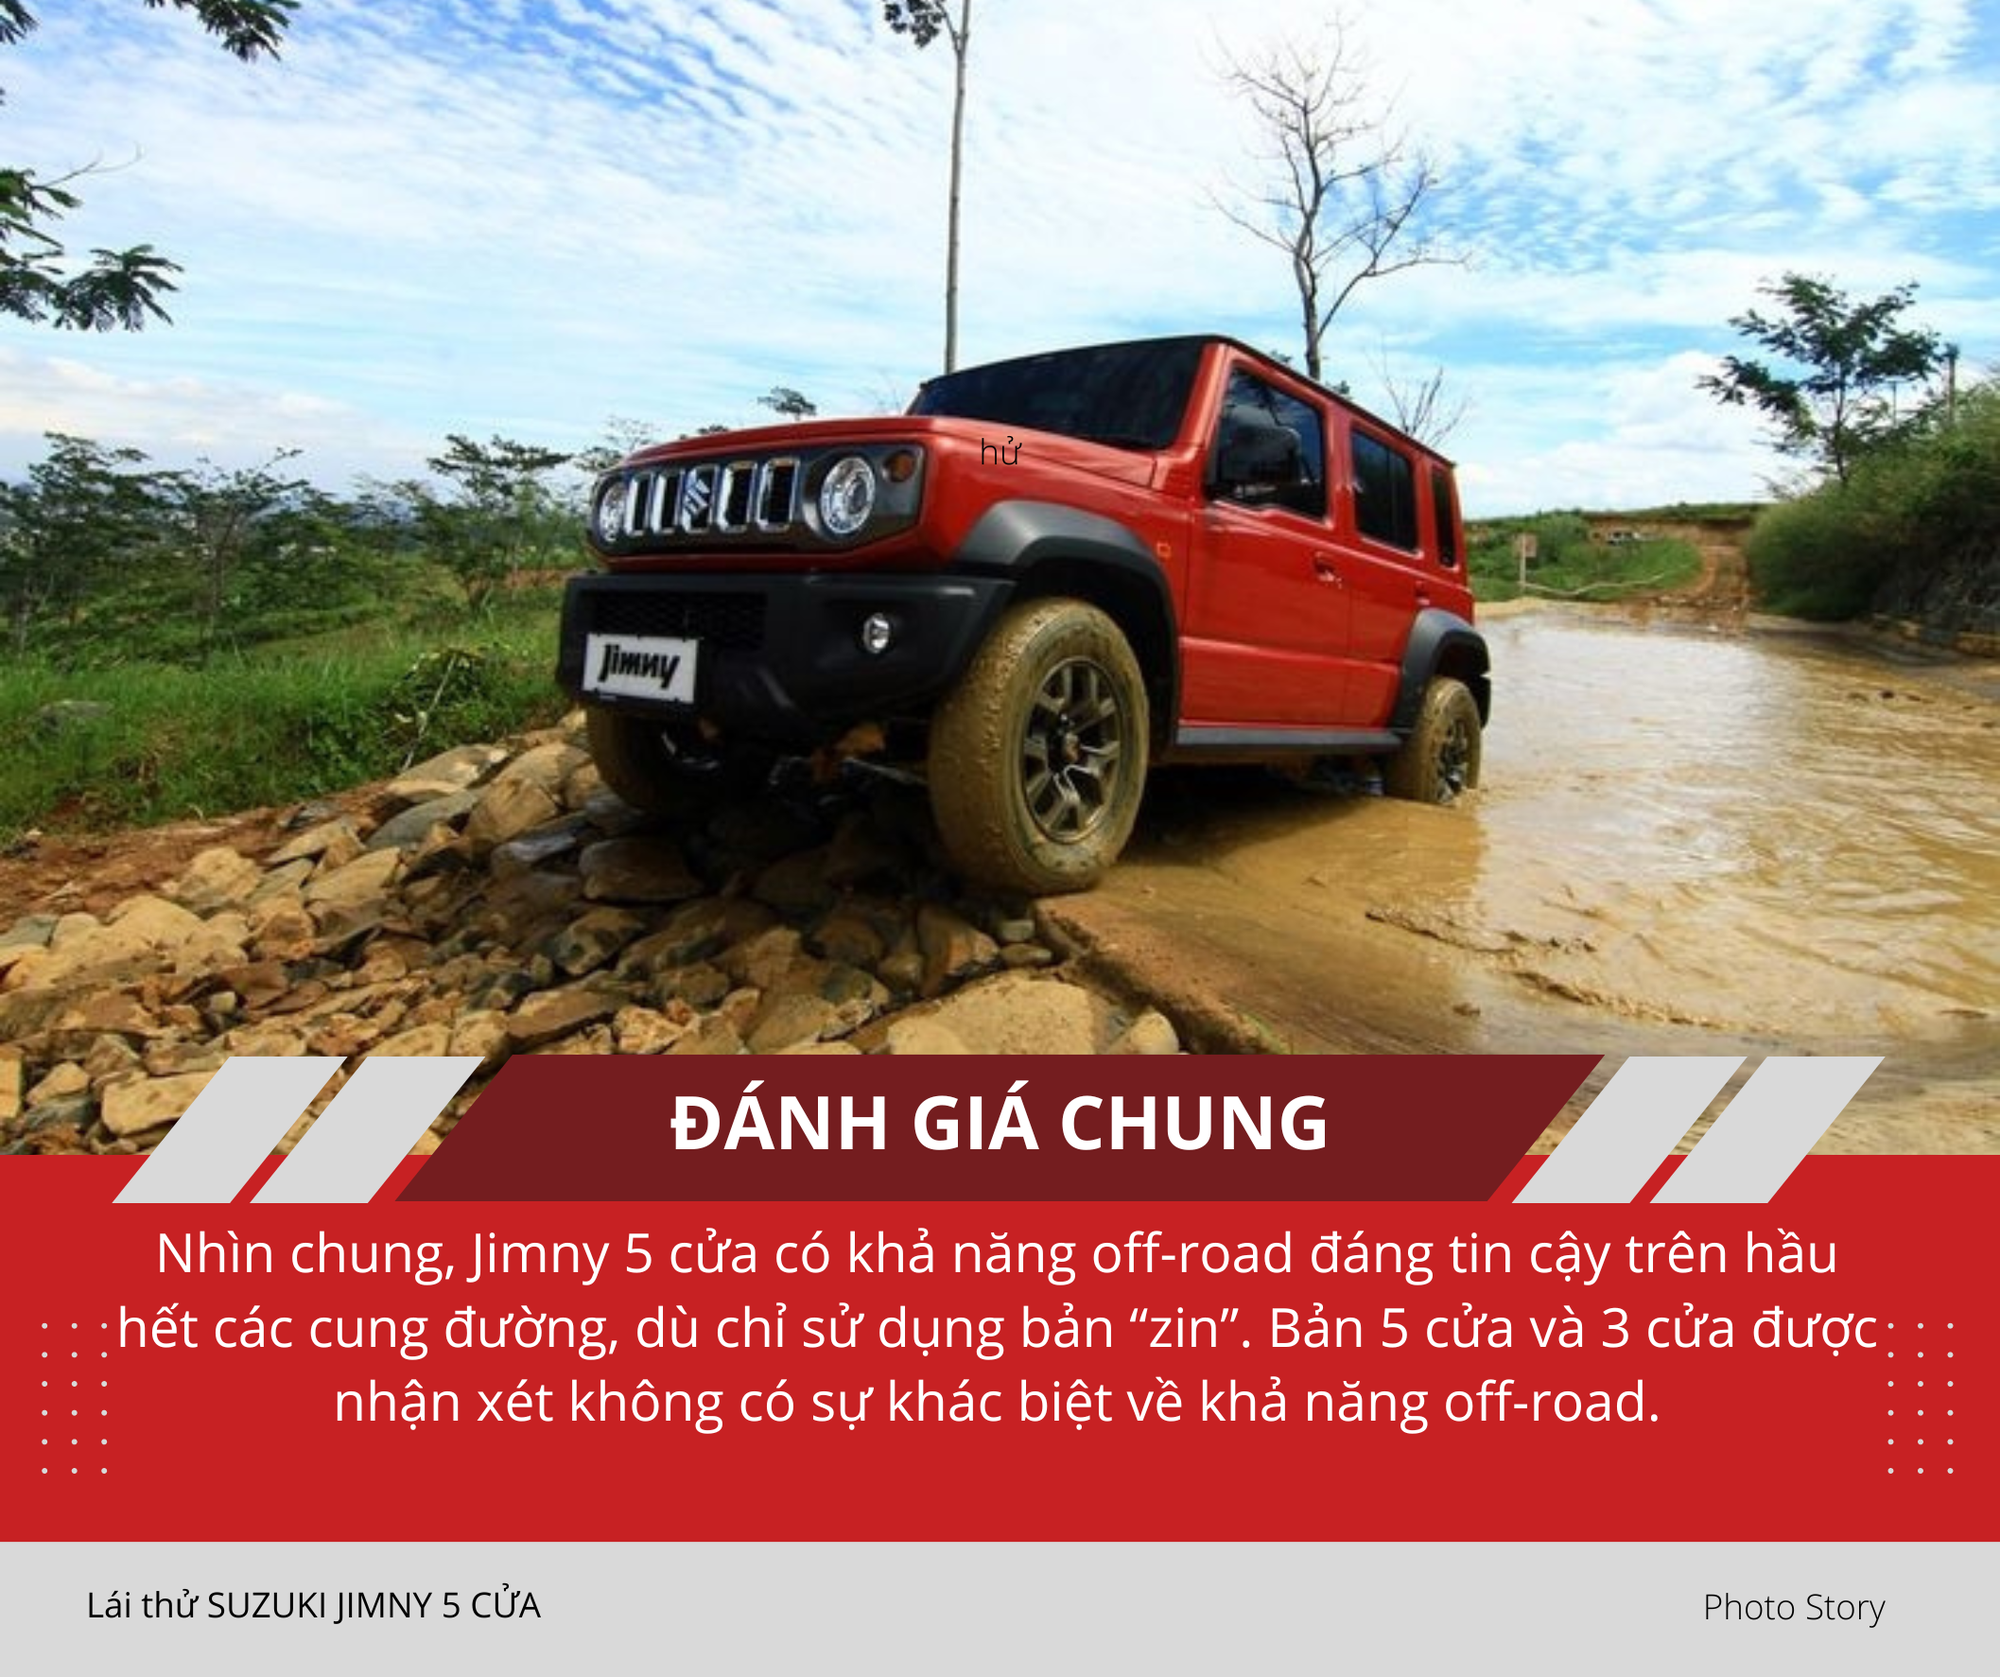 Mang Suzuki Jimny 5 cửa vào rừng 'hành hạ': Nhiều điểm hơn hẳn bản 3 cửa sắp ra mắt Việt Nam, thoải mái cho cả nhà cùng off-road- Ảnh 3.